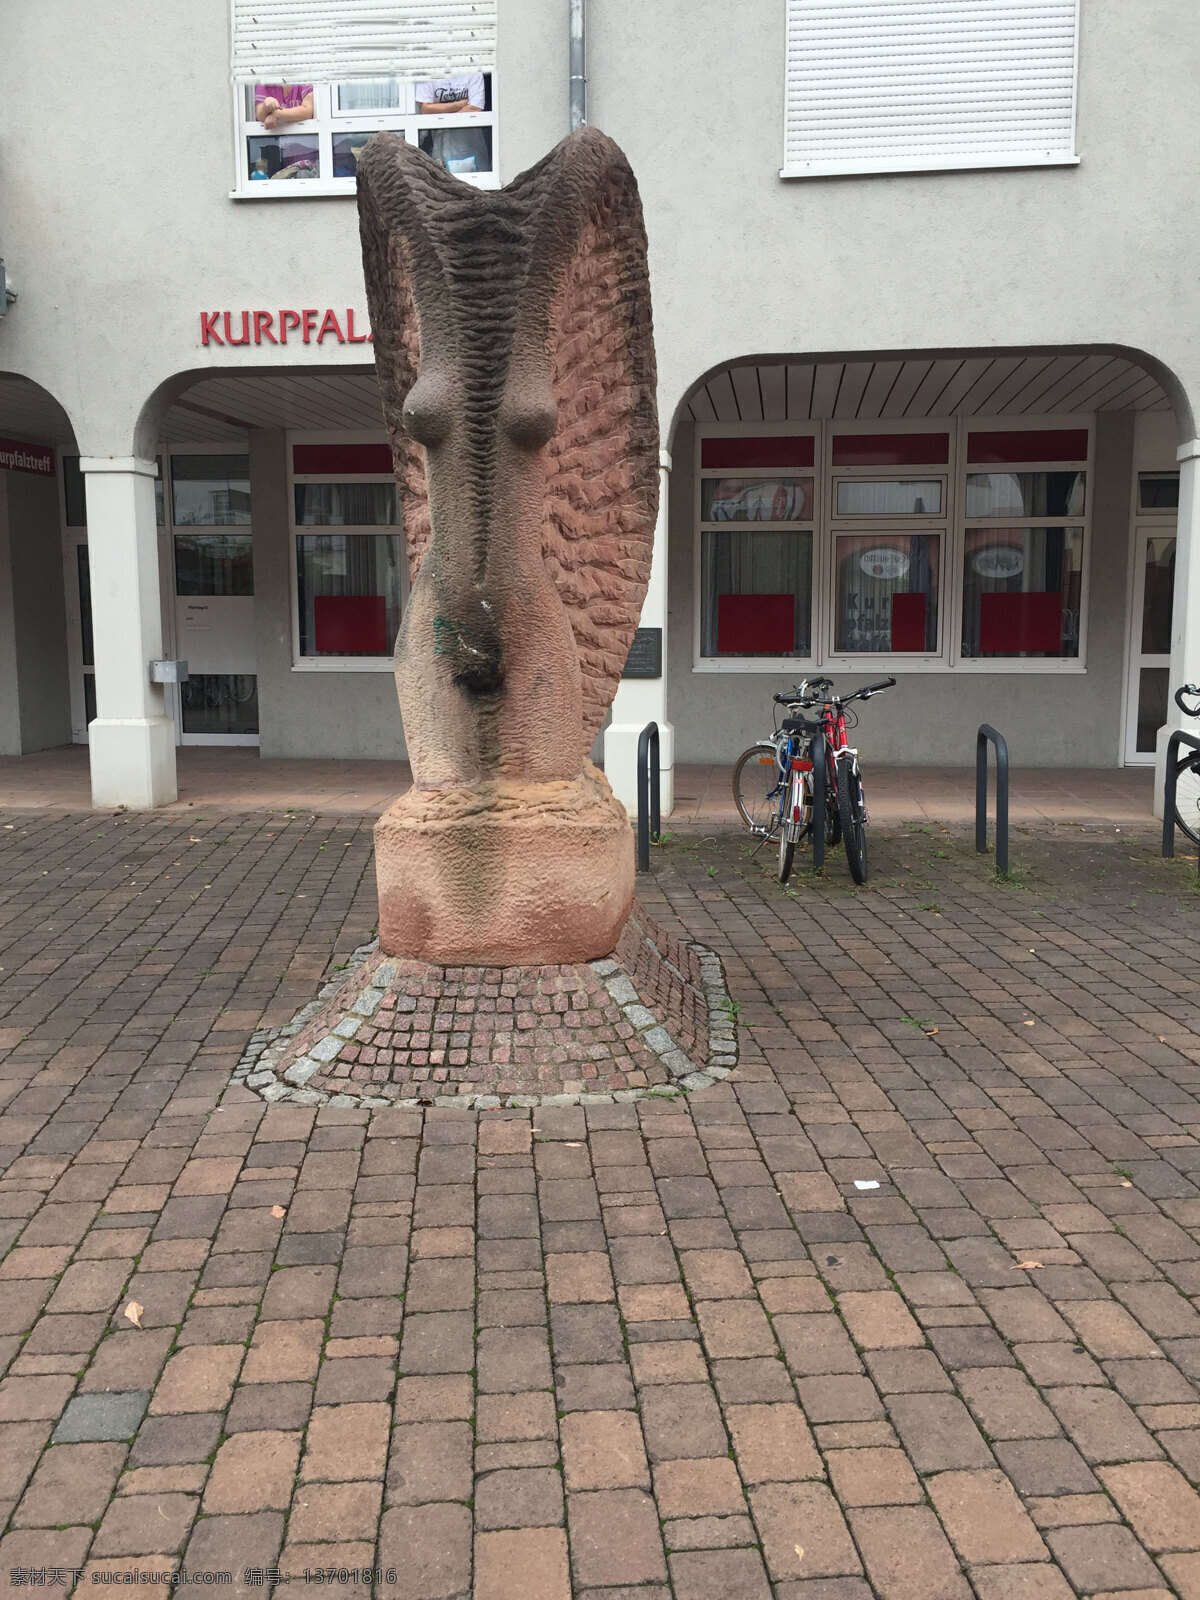 德国街拍 街景 德国 建筑 雕塑 石雕 旅游摄影 国外旅游